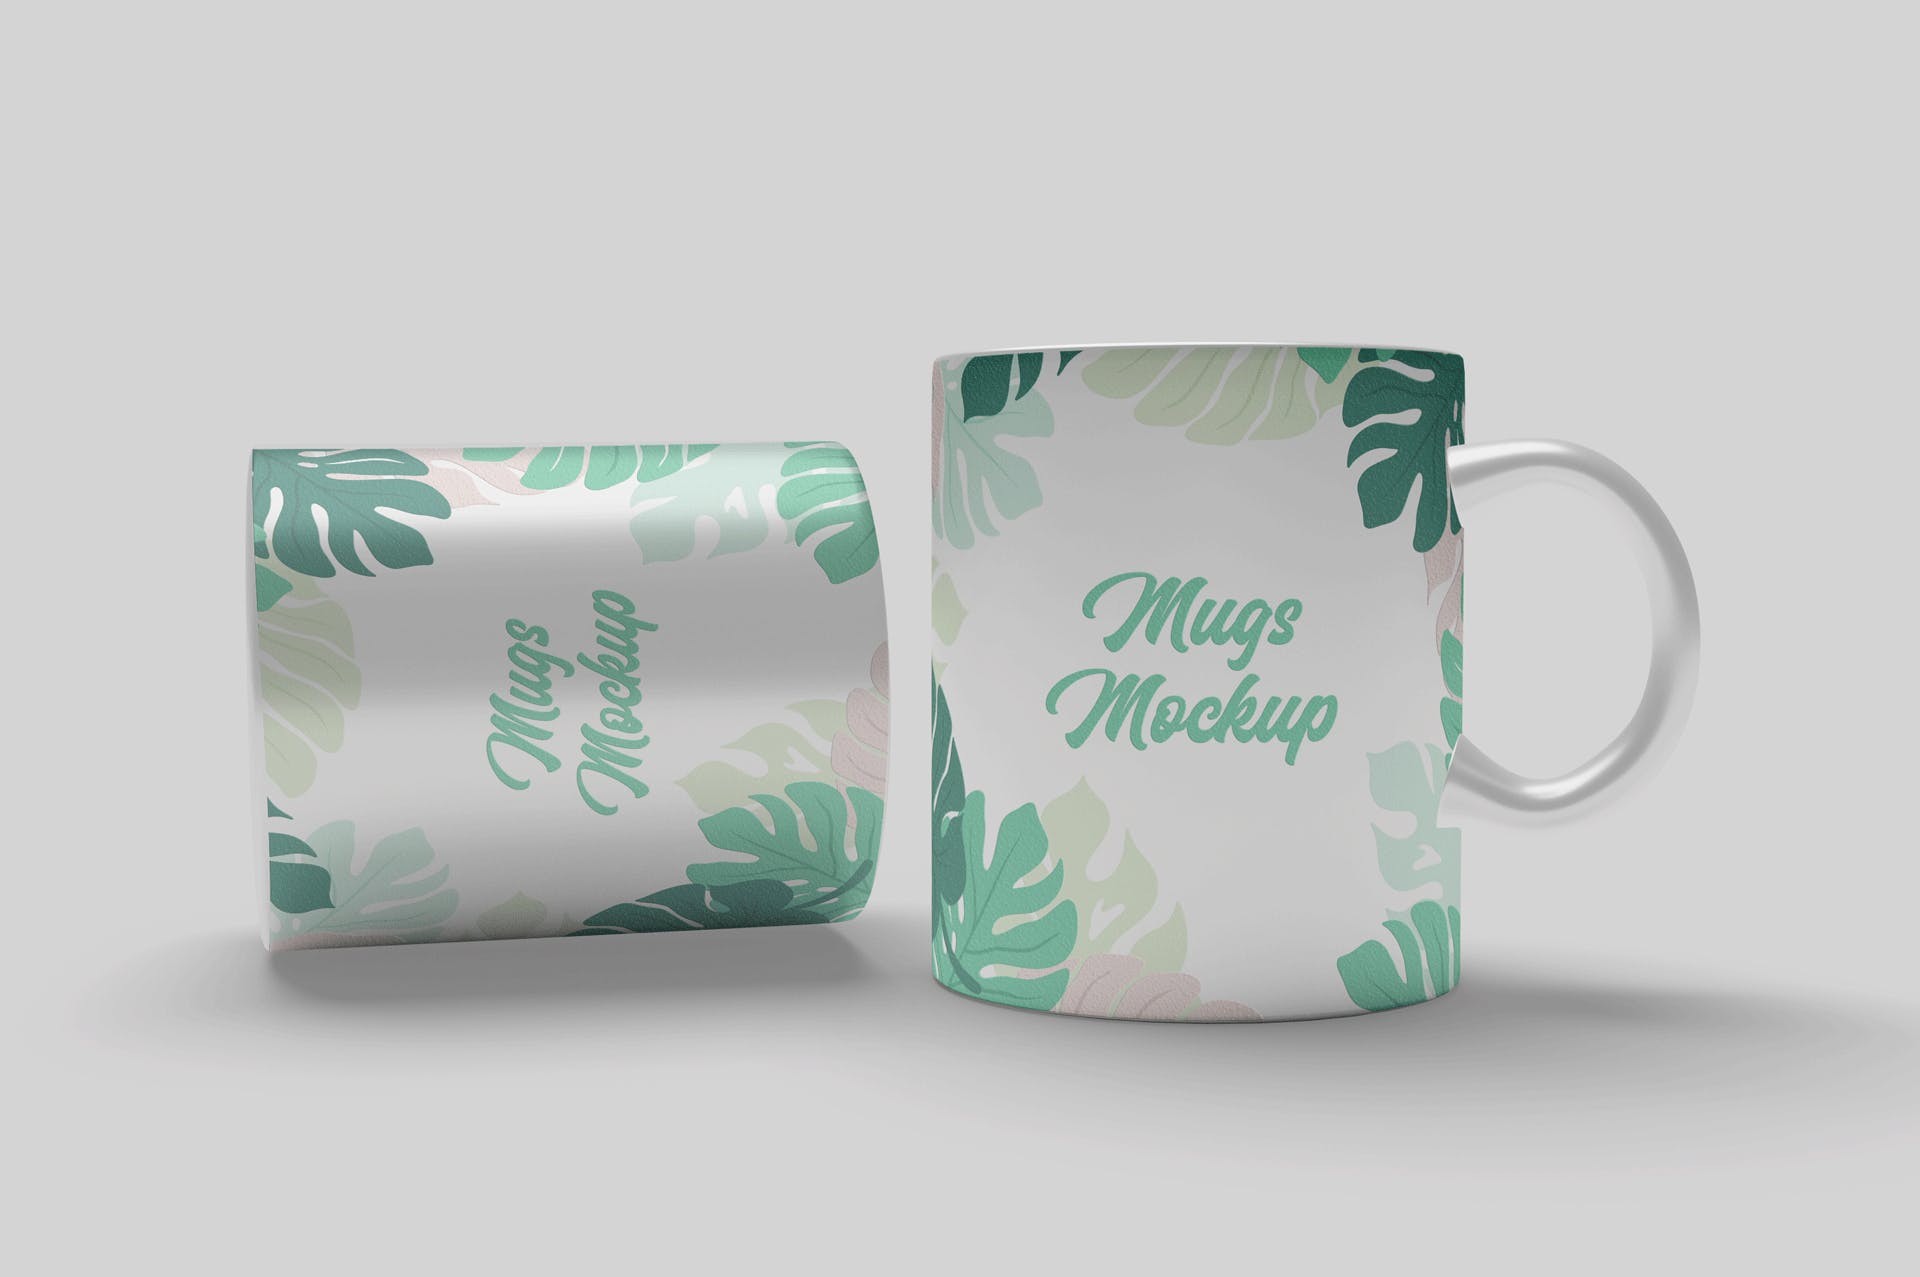 陶瓷马克杯印花图案设计预览大洋岛精选 Mug Mockups插图1